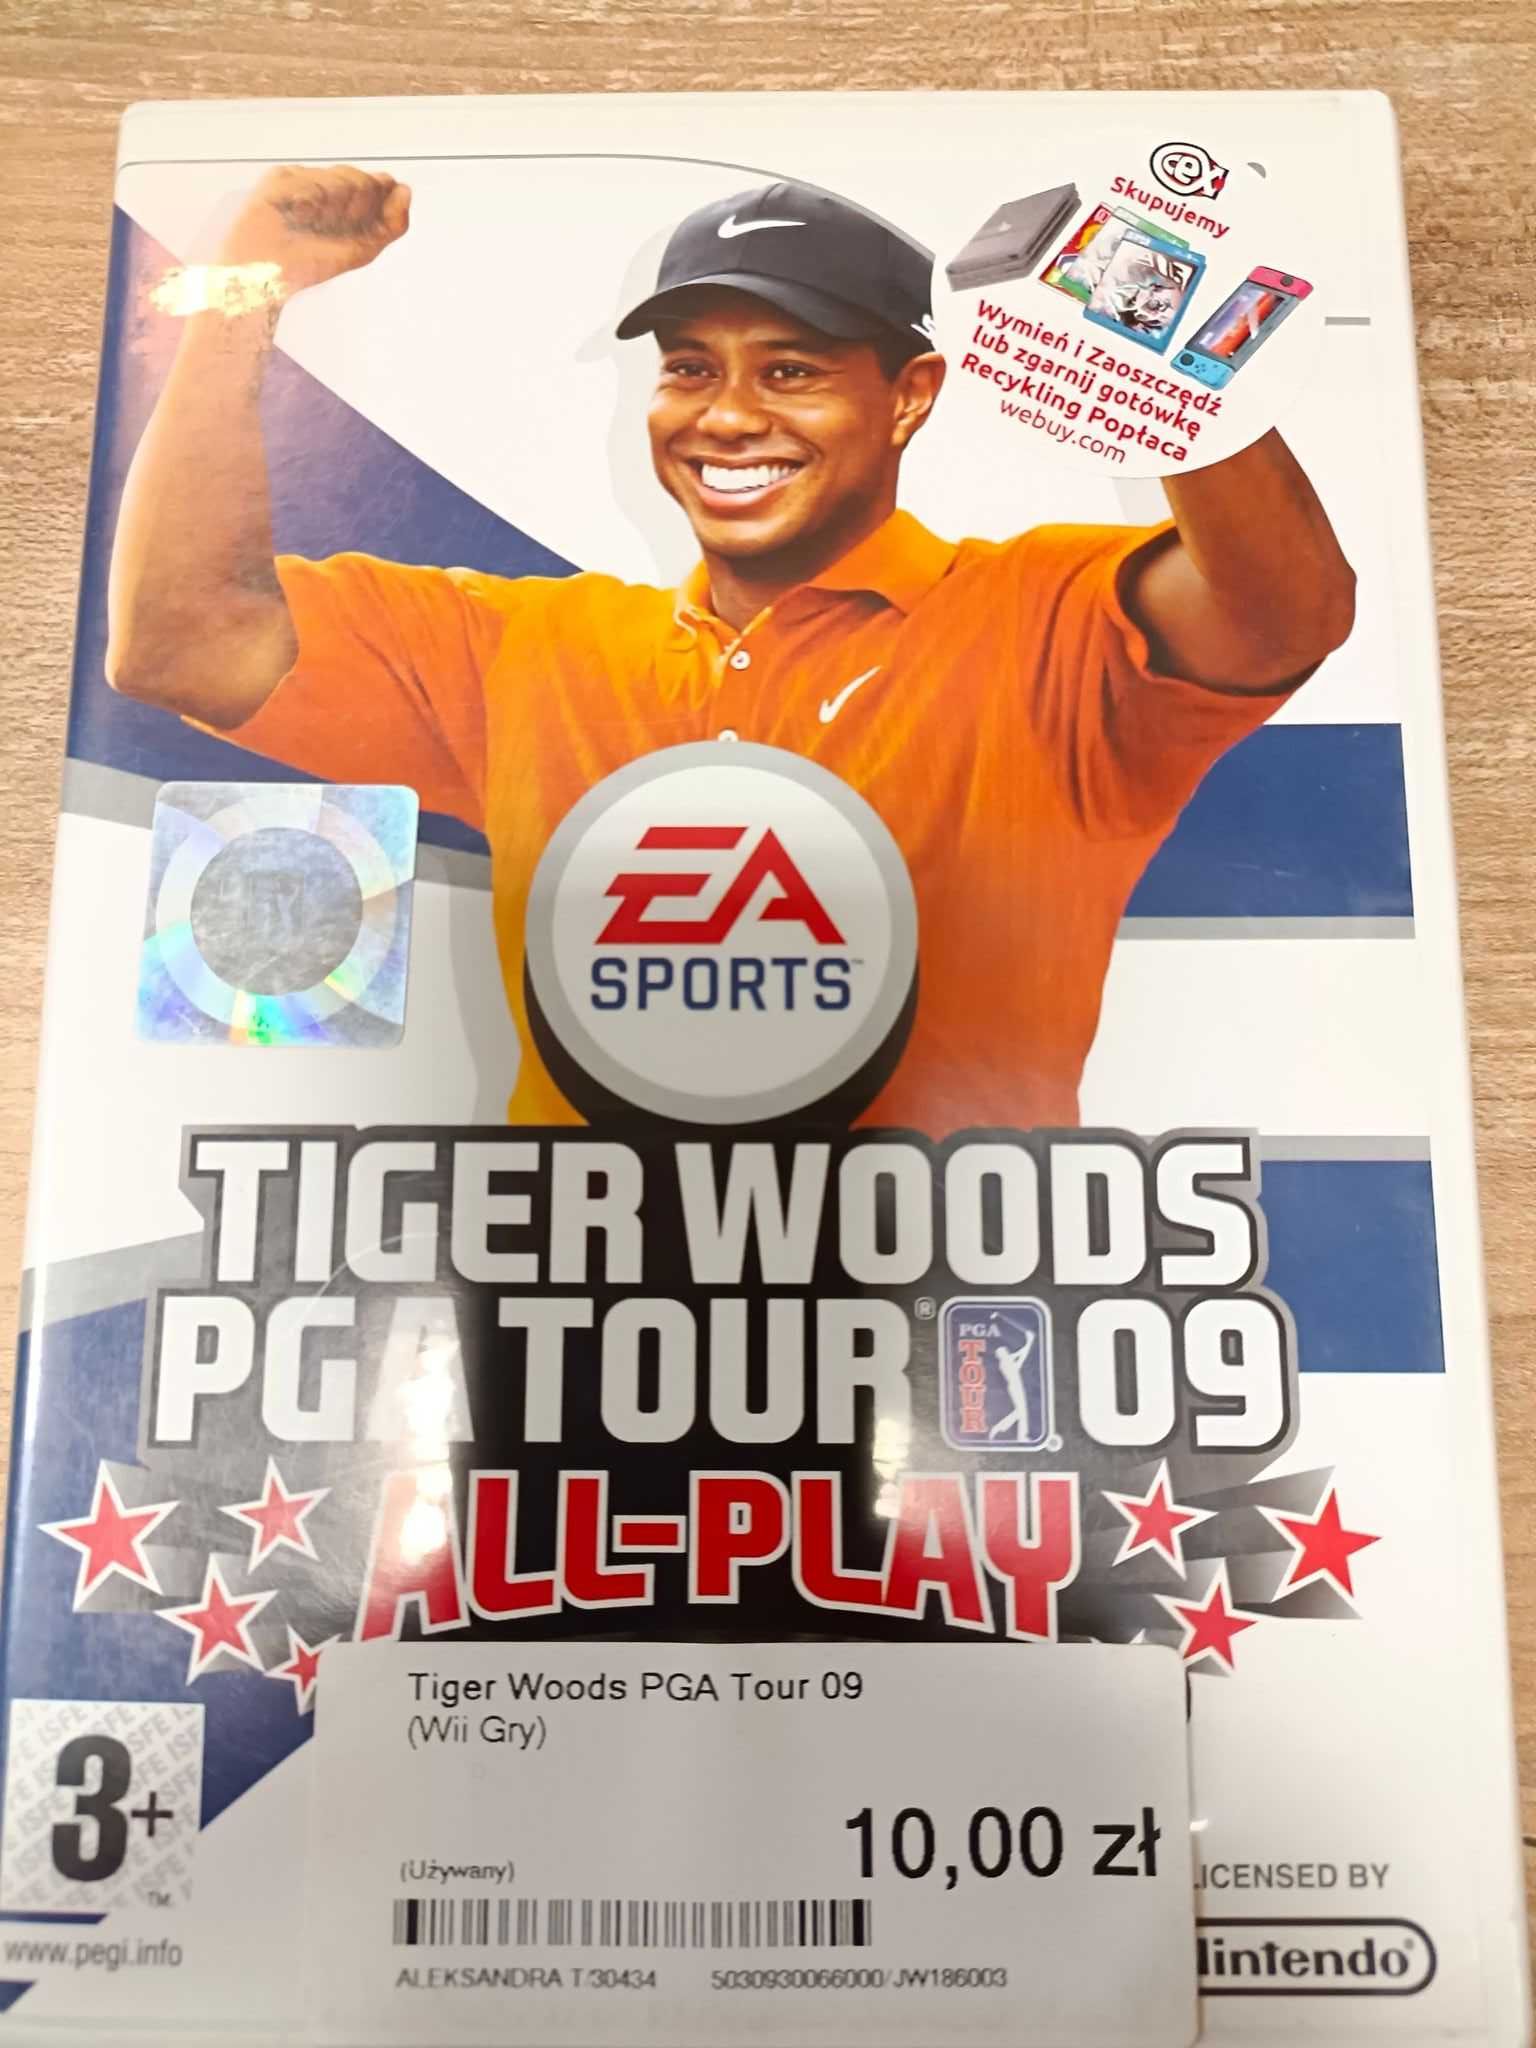 Tiger Woods PGA Tour 09 All-Play Wii Sklep Wysyłka Wymiana